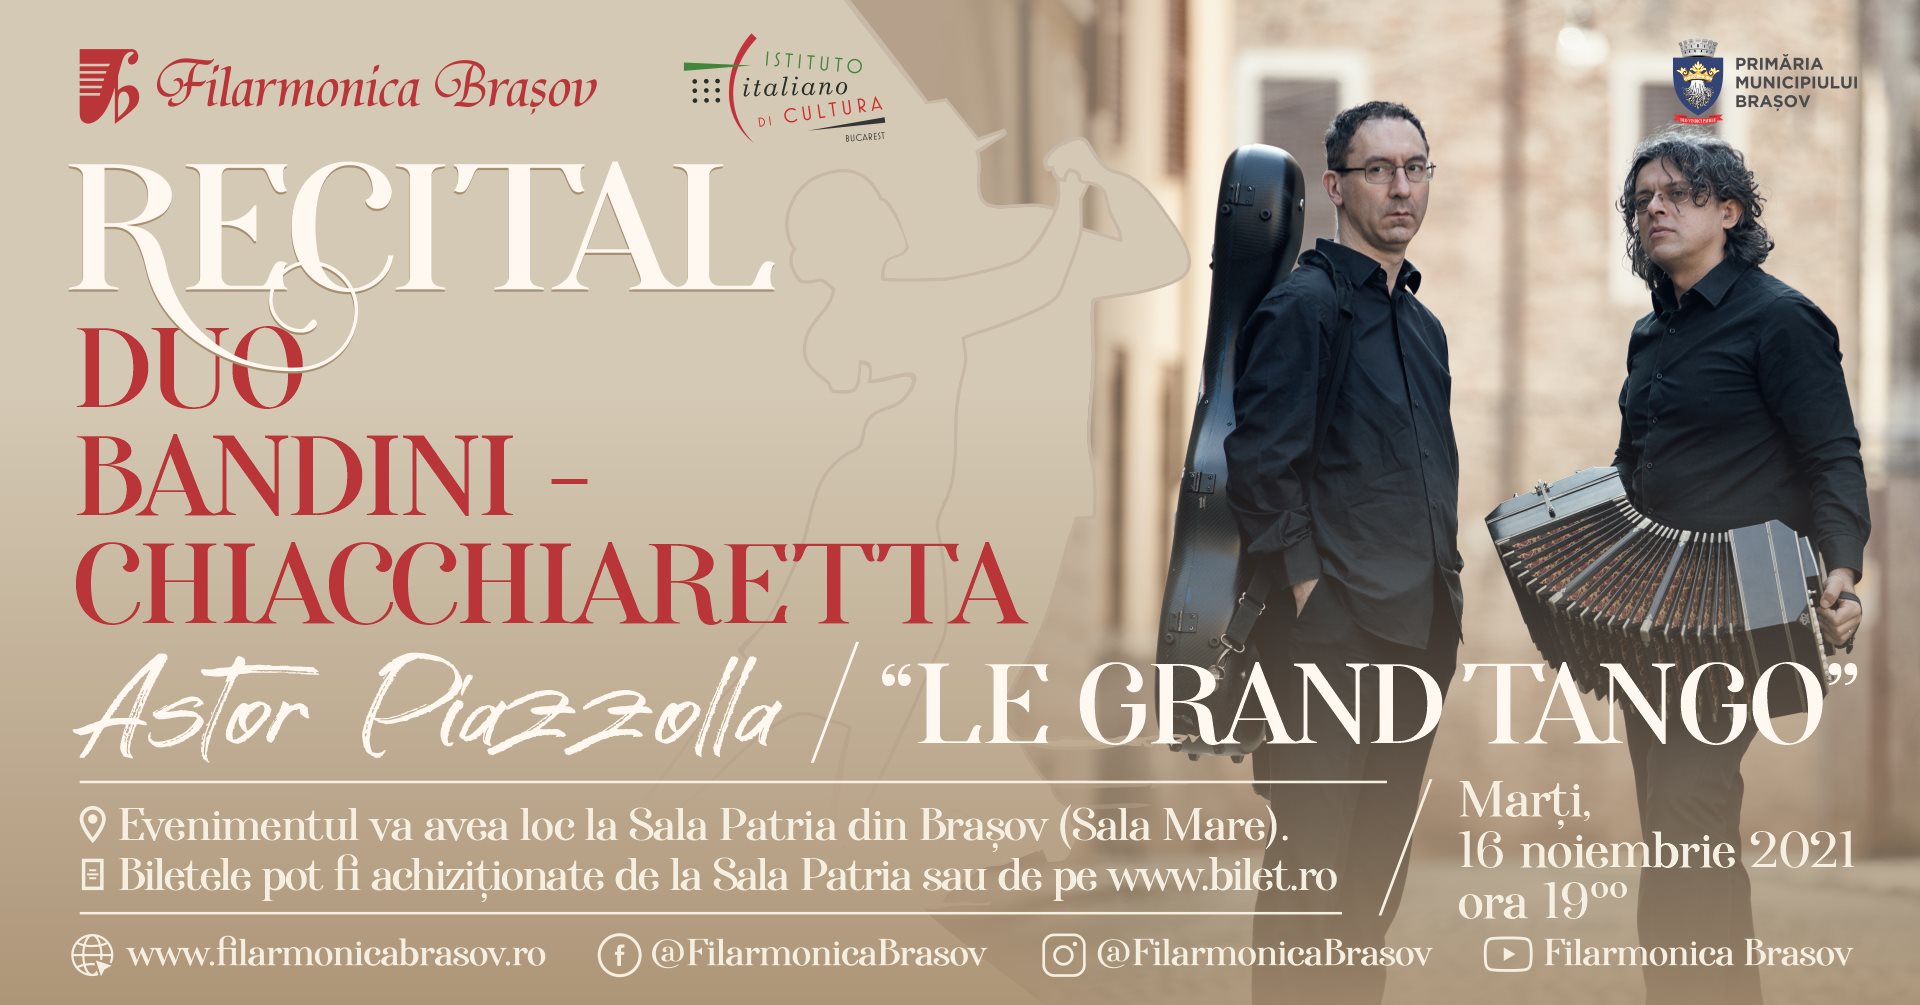 Recital Duo Bandini - Chiacchiaretta: "Le Grand Tango"